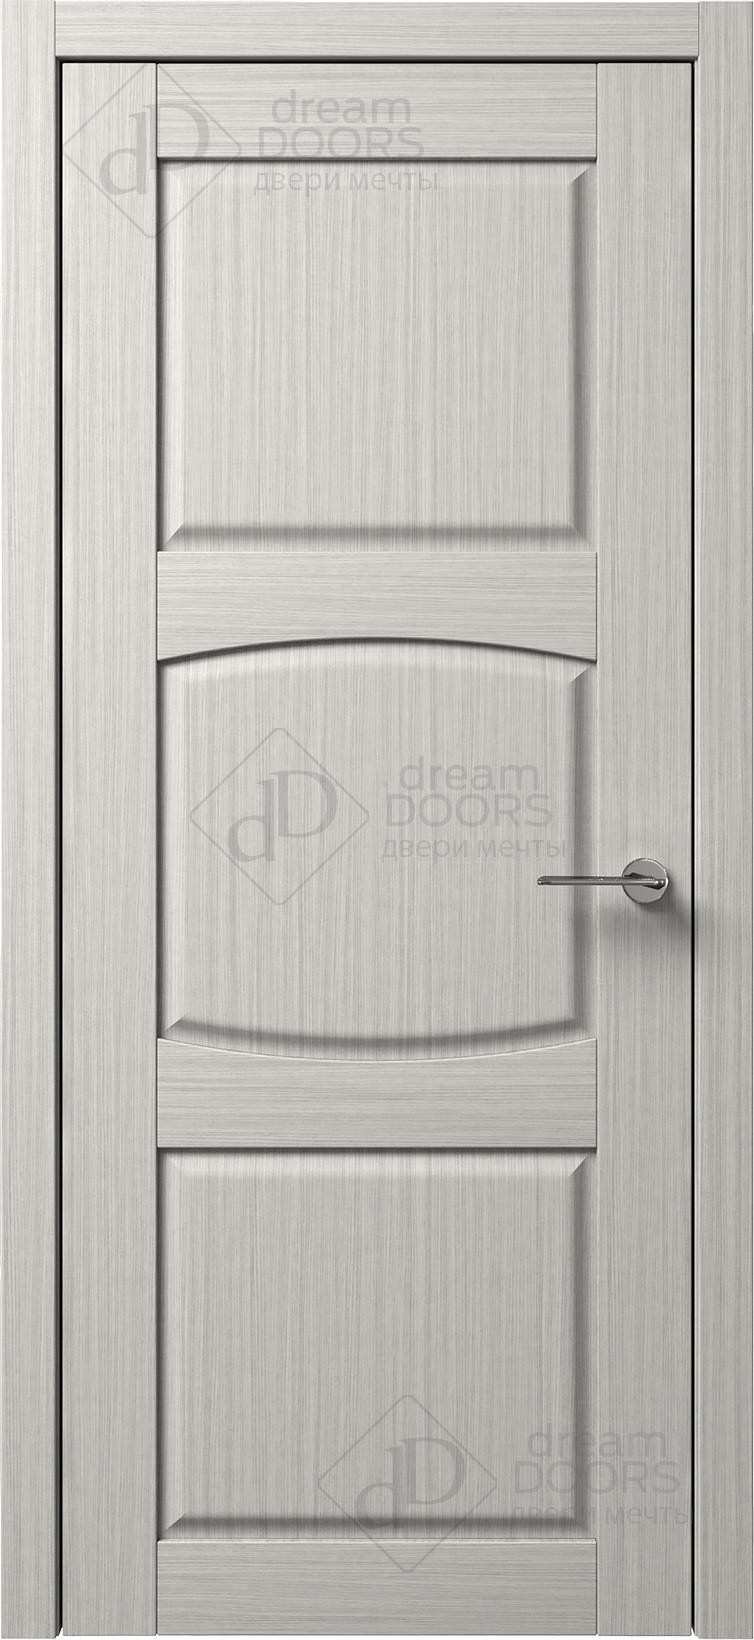 Dream Doors Межкомнатная дверь B14-3, арт. 5590 - фото №1